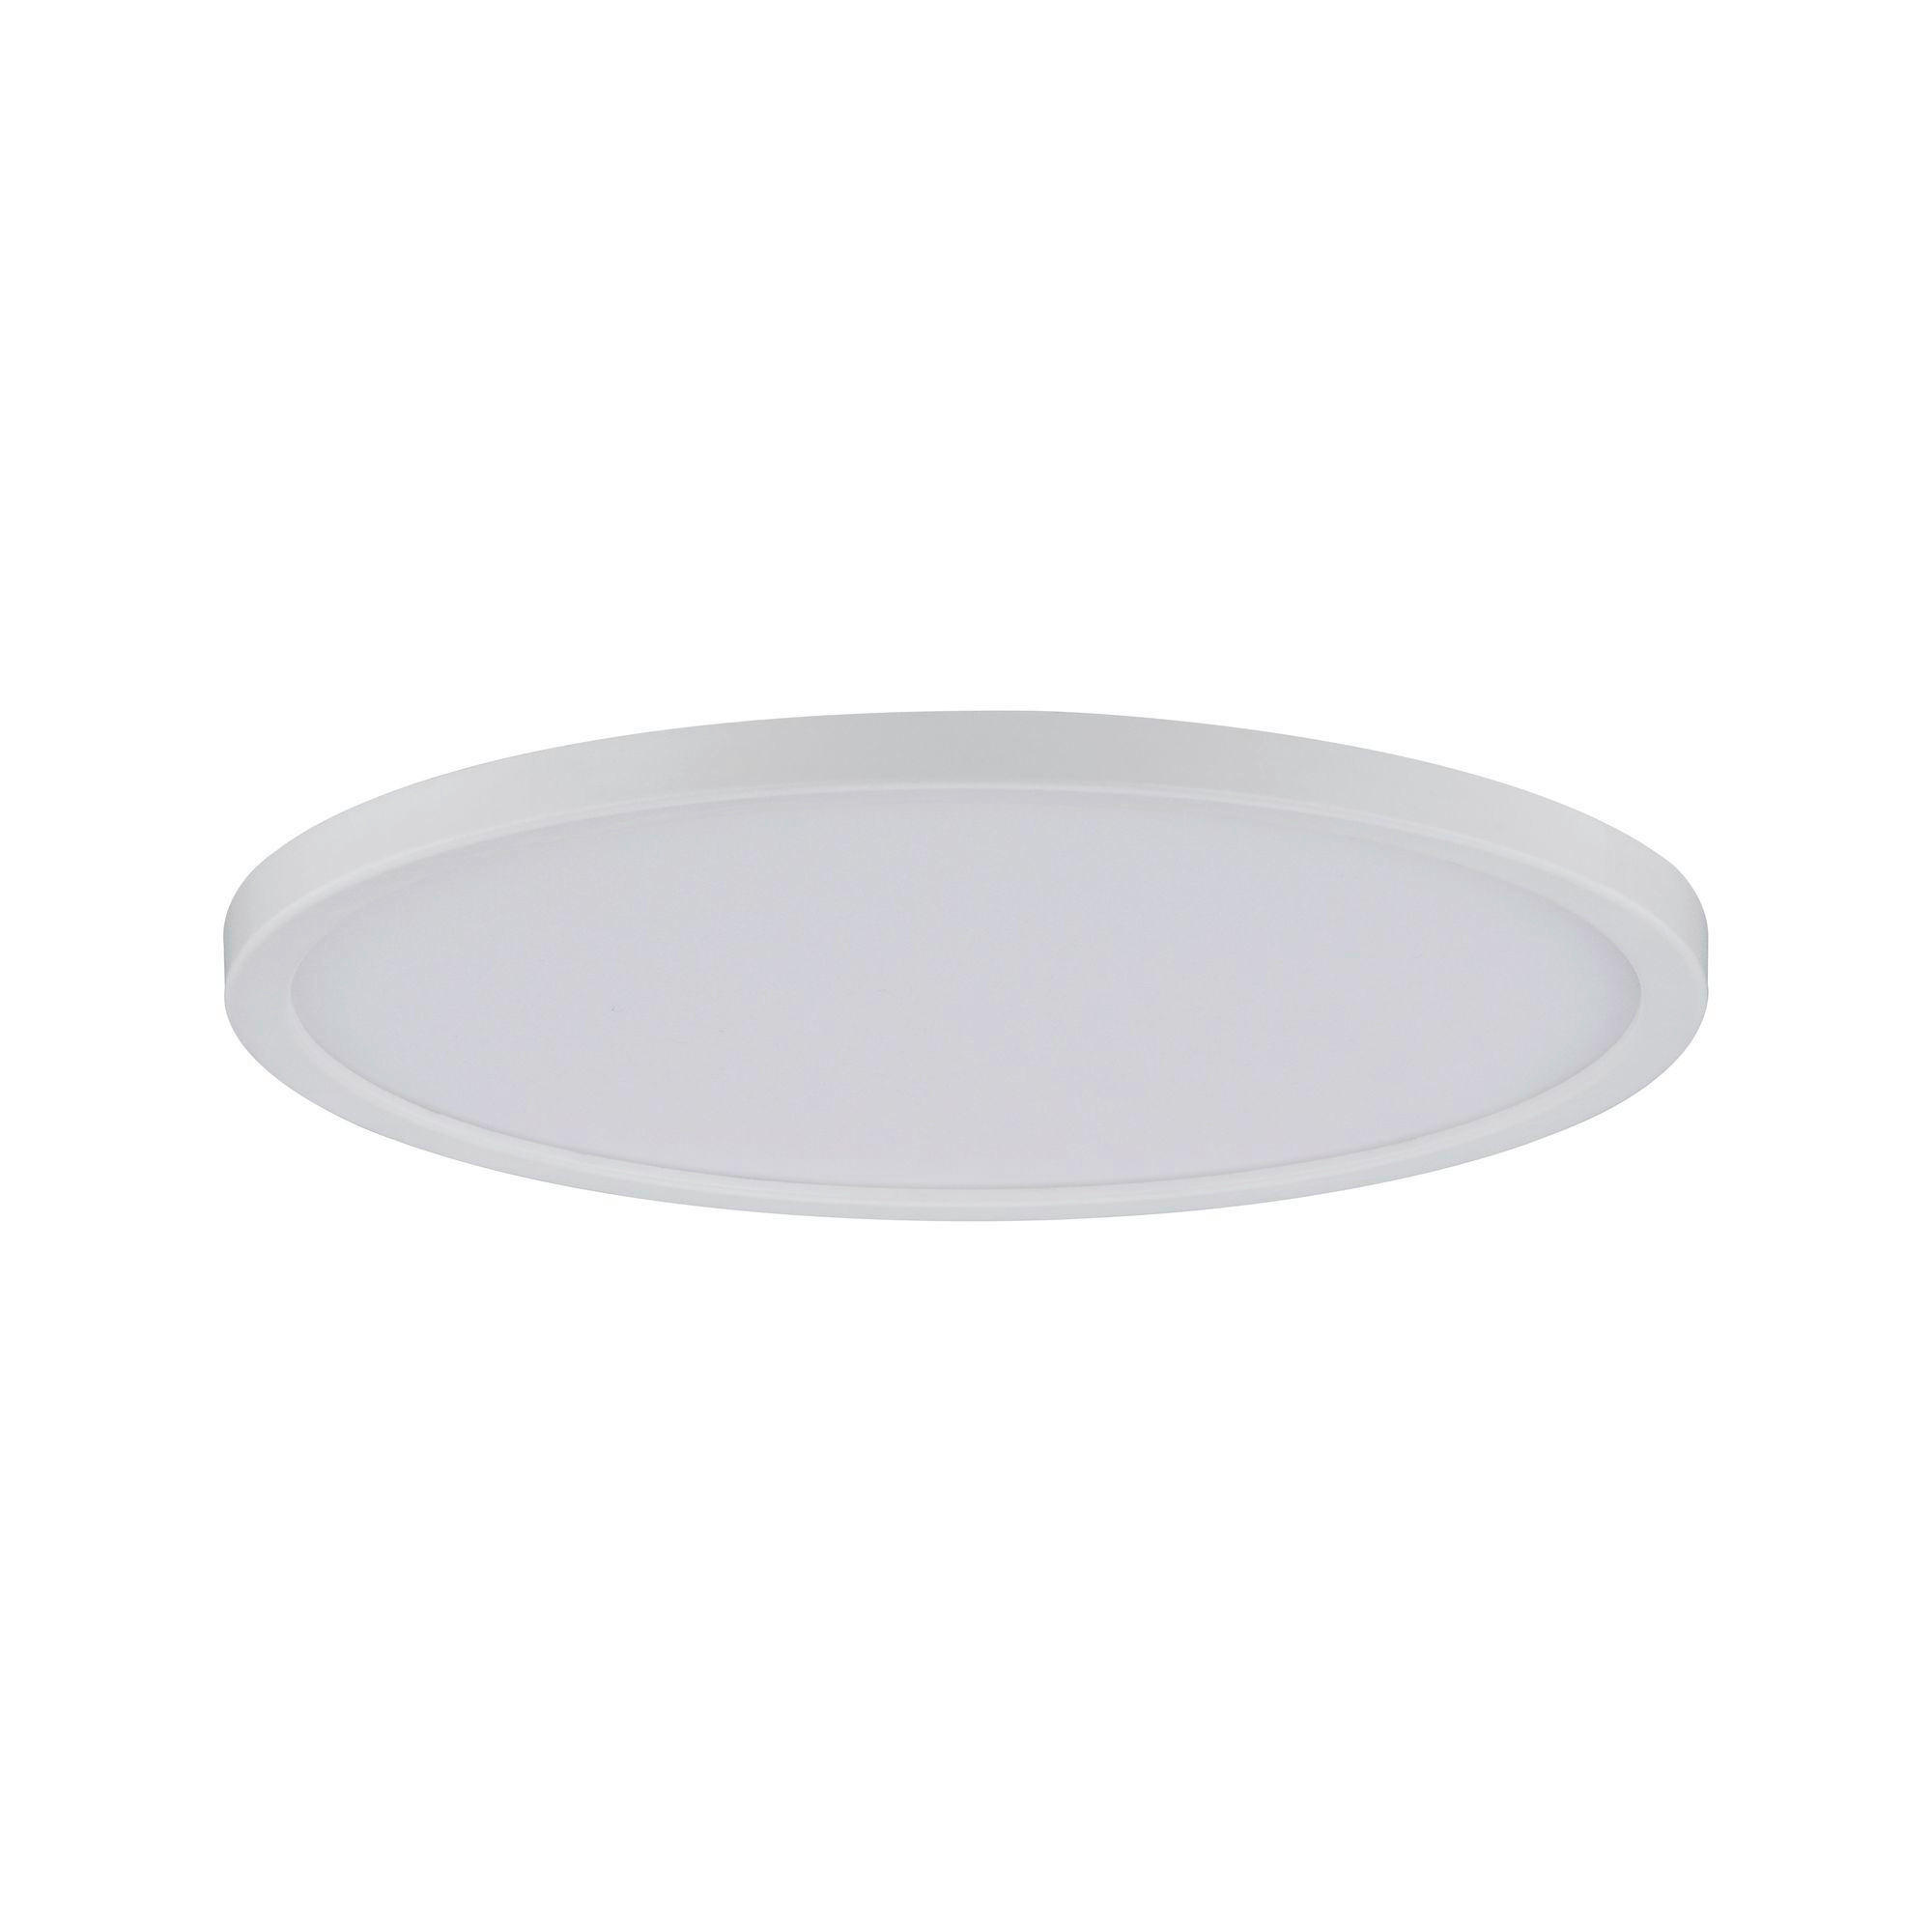 LED-PANEEL  - Weiß, Basics, Kunststoff (18/1cm) - Paulmann